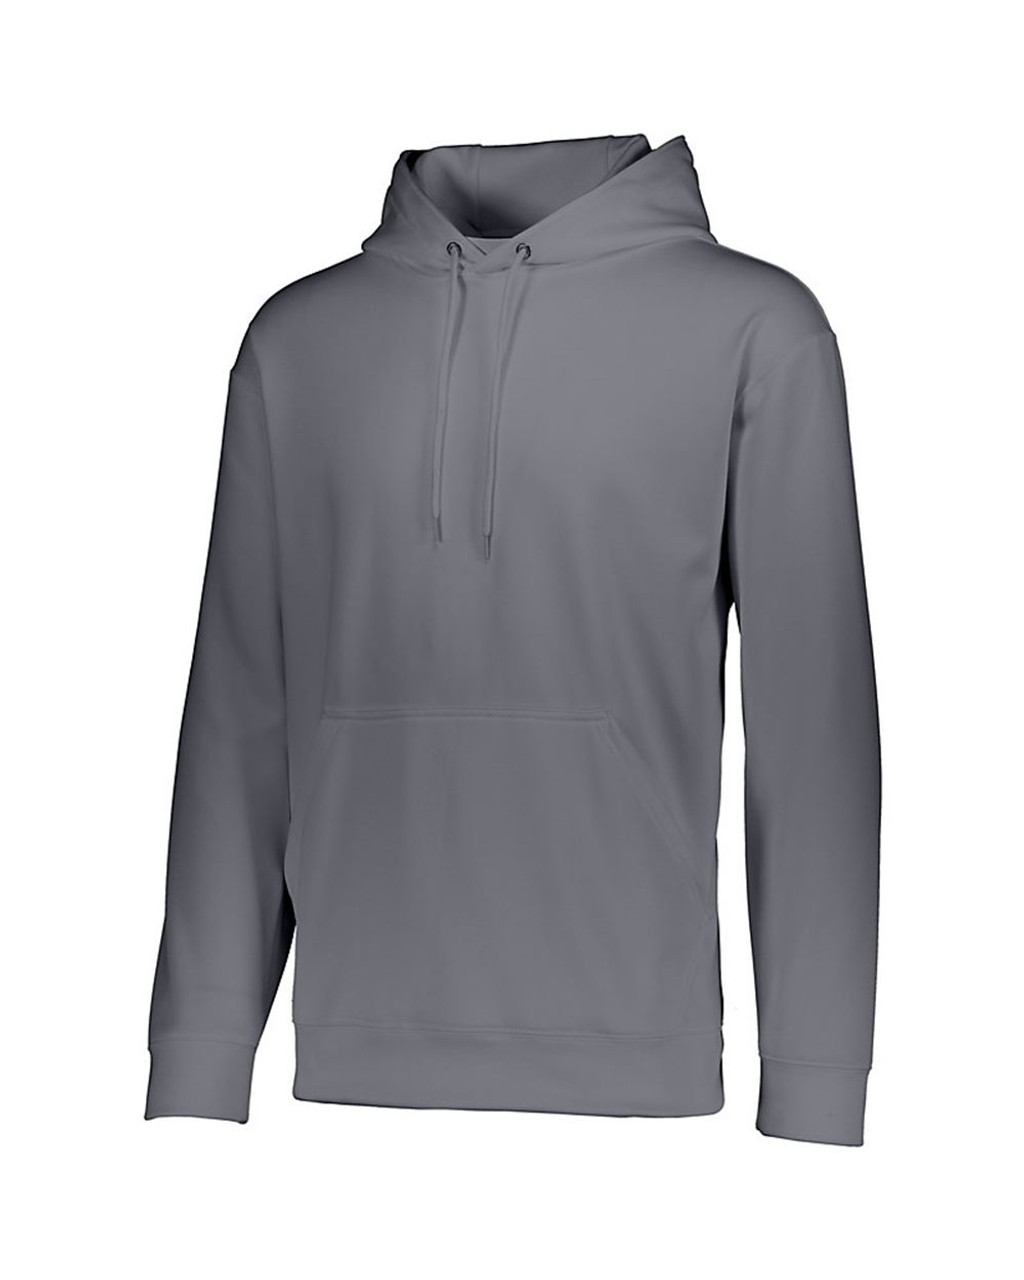 Custom Youth Wicking Fleece Hooded Sweatshirt - 5506